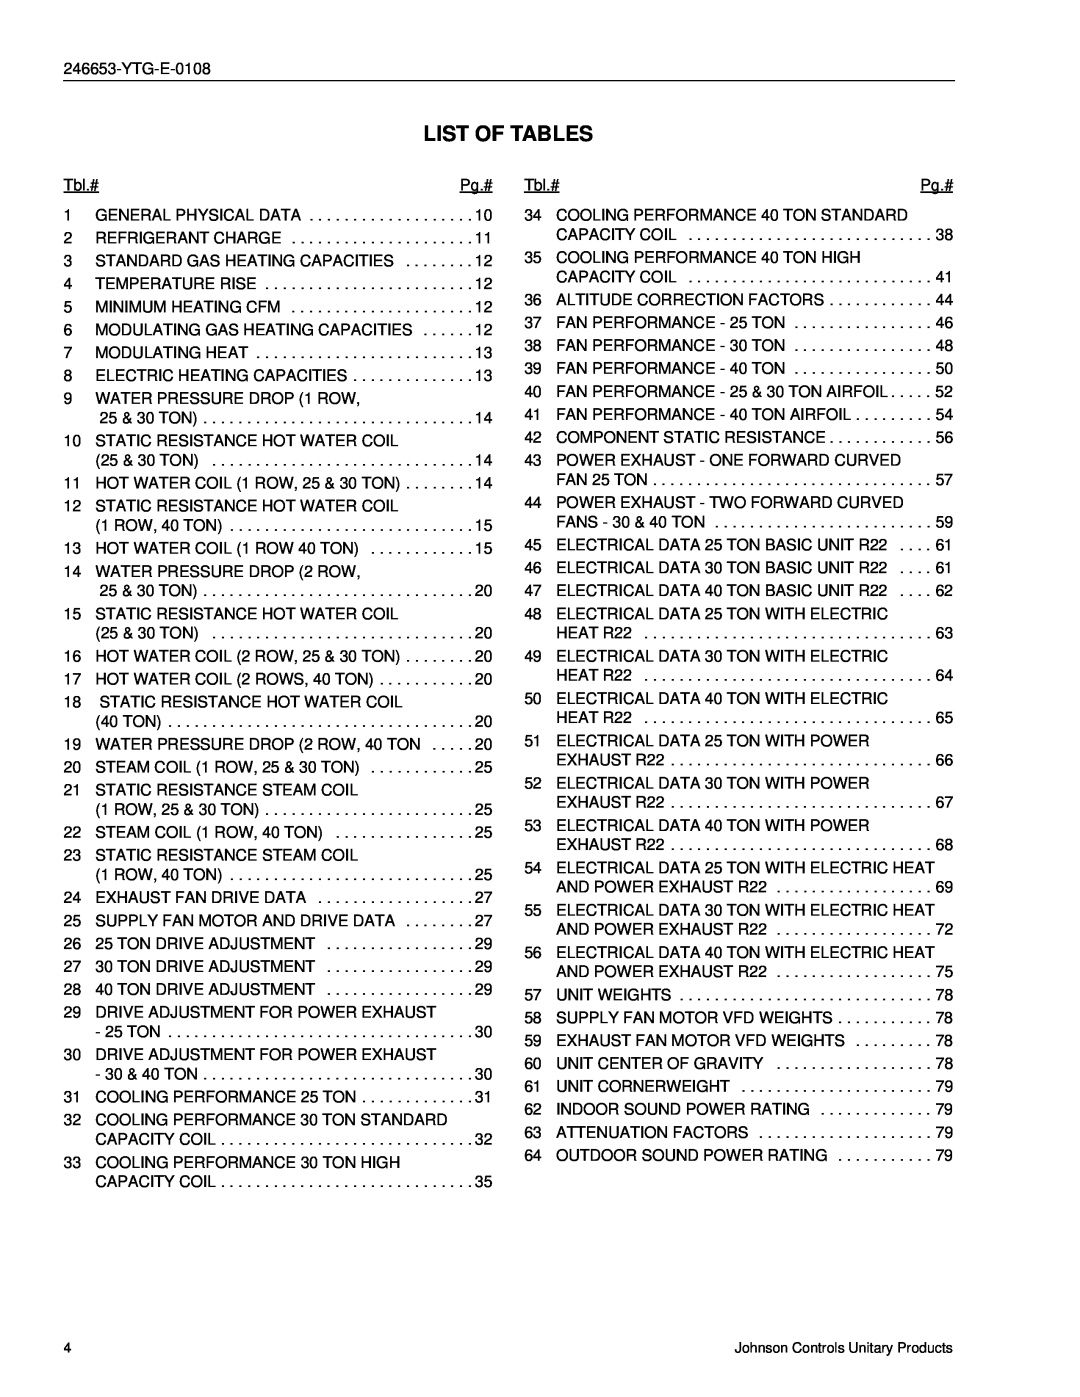 York Y34, Y33, Y32 manual List Of Tables 